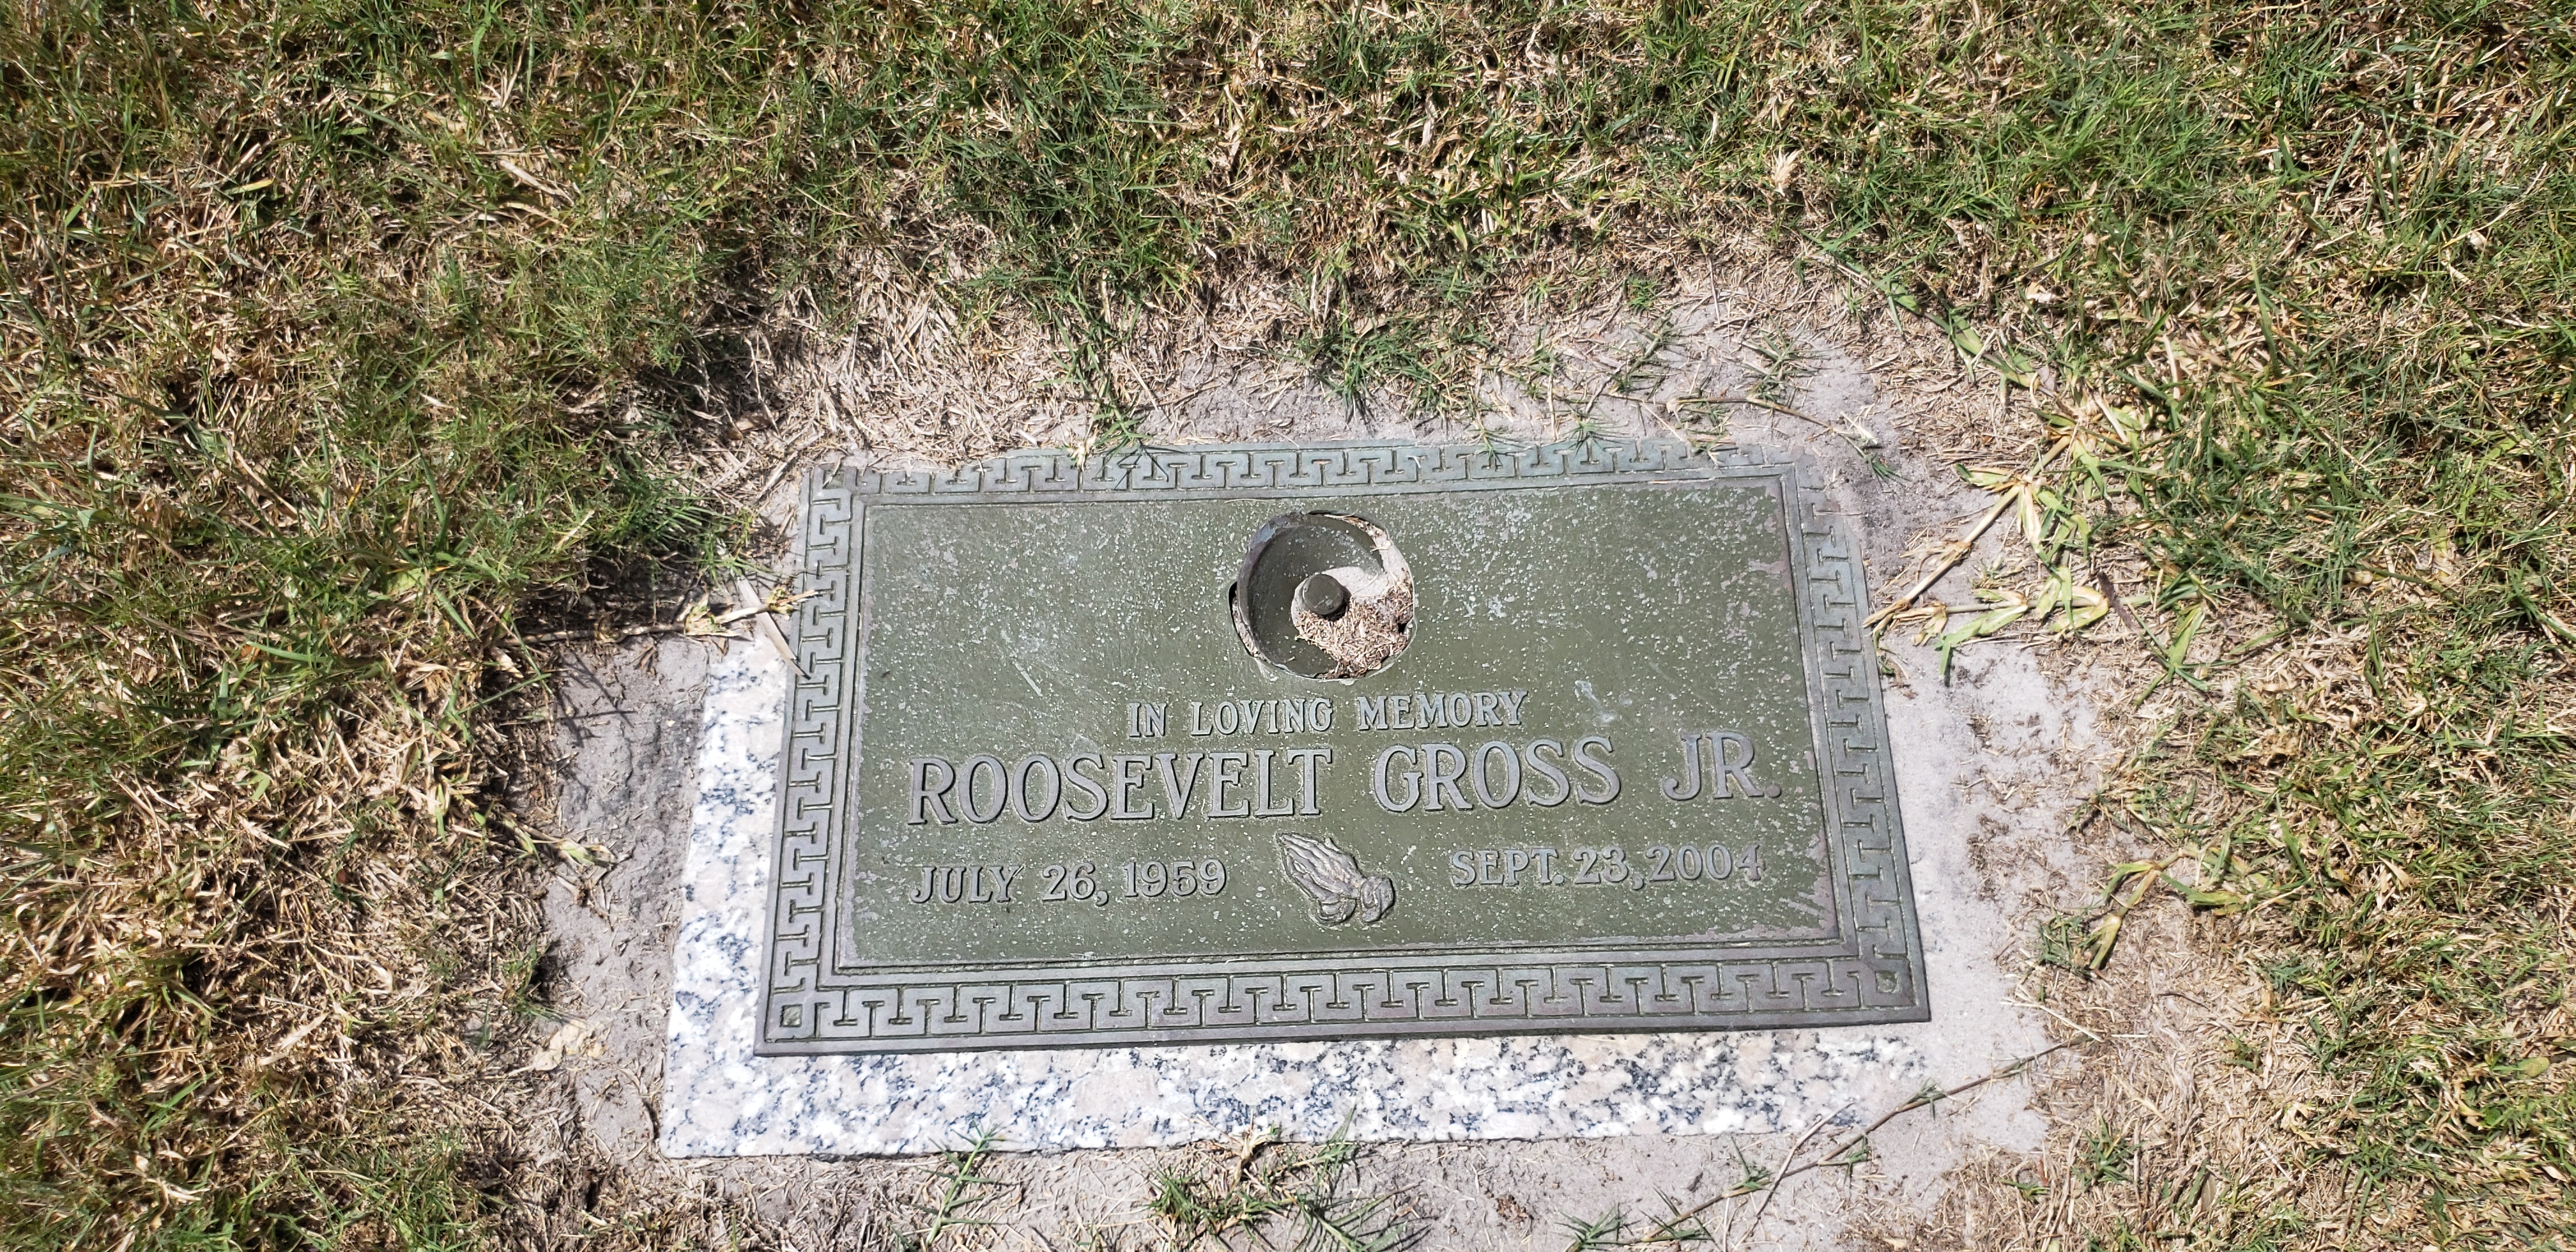 Roosevelt Gross, Jr